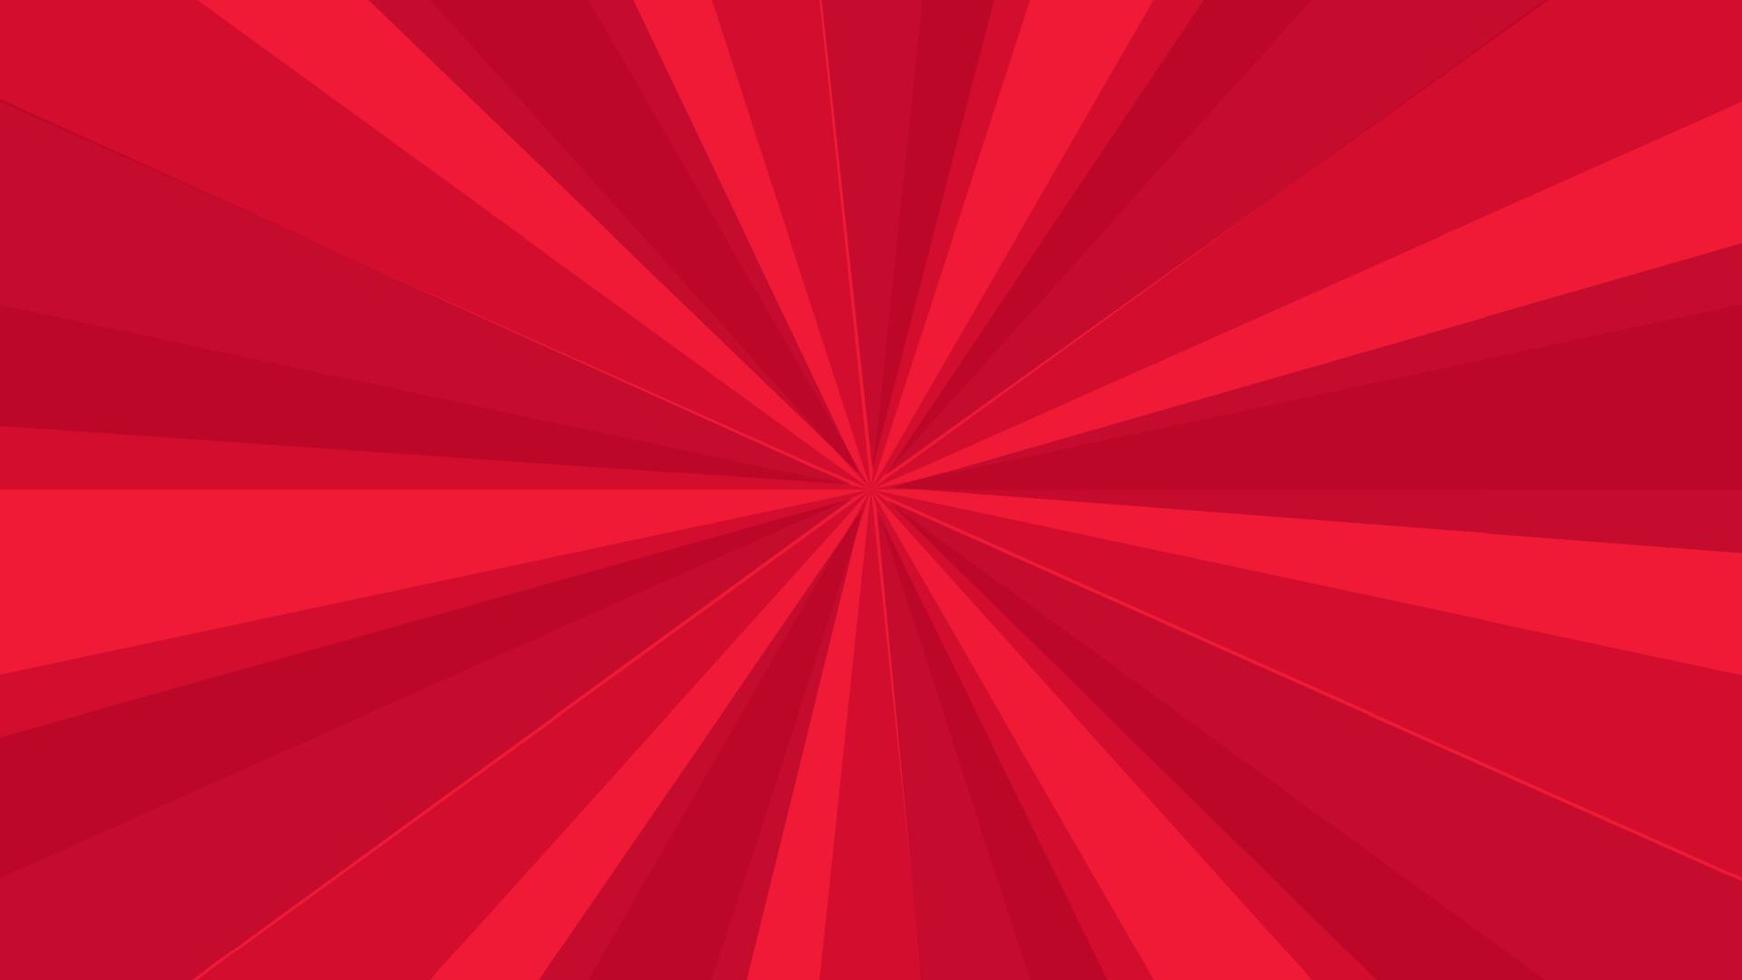 fondo de página de cómic rojo en estilo pop art con espacio vacío. plantilla con rayos, puntos y textura de efecto de trama de semitonos. ilustración vectorial vector